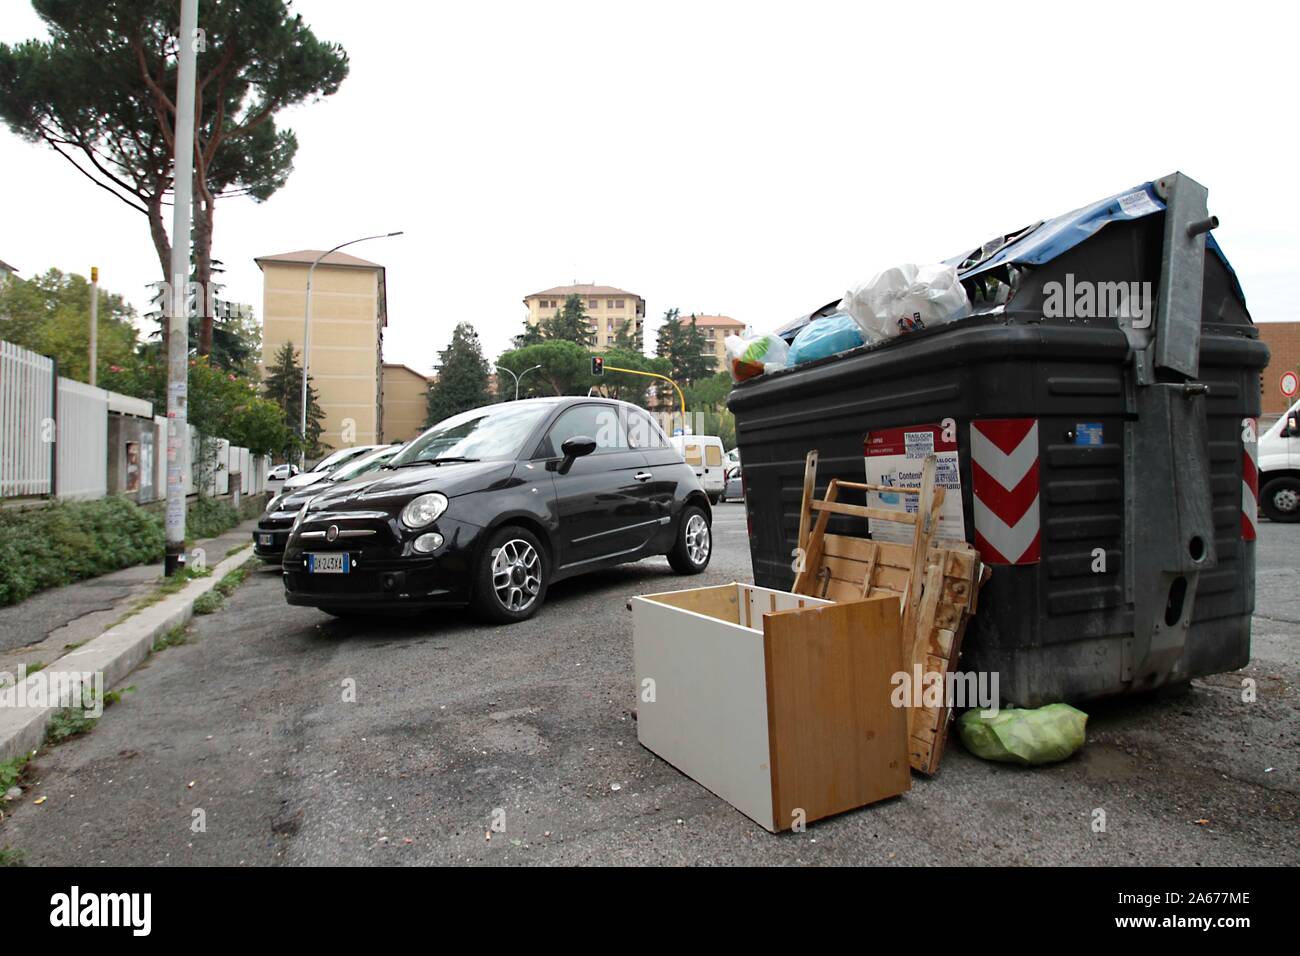 La degradación de la situación en el distrito de Roma Torrespaccata (Foto por Claudio Sisto/Pacific Press) Foto de stock